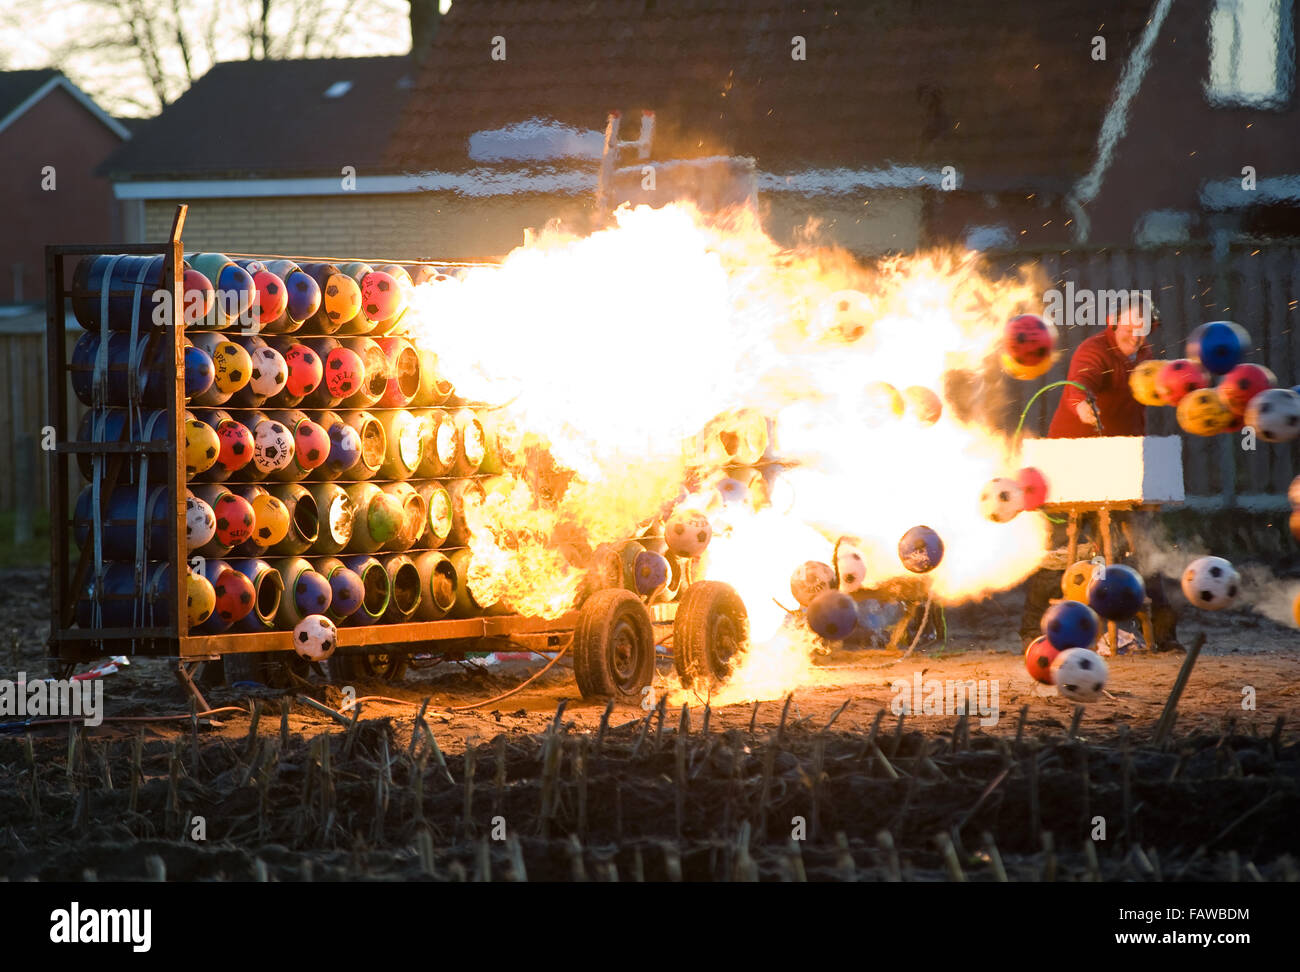 ENSCHEDE, Paesi Bassi - 31 DIC 2015: esplosione di carburo è una tradizione per la vigilia di capodanno nei Paesi Bassi e in Belgio. Foto Stock